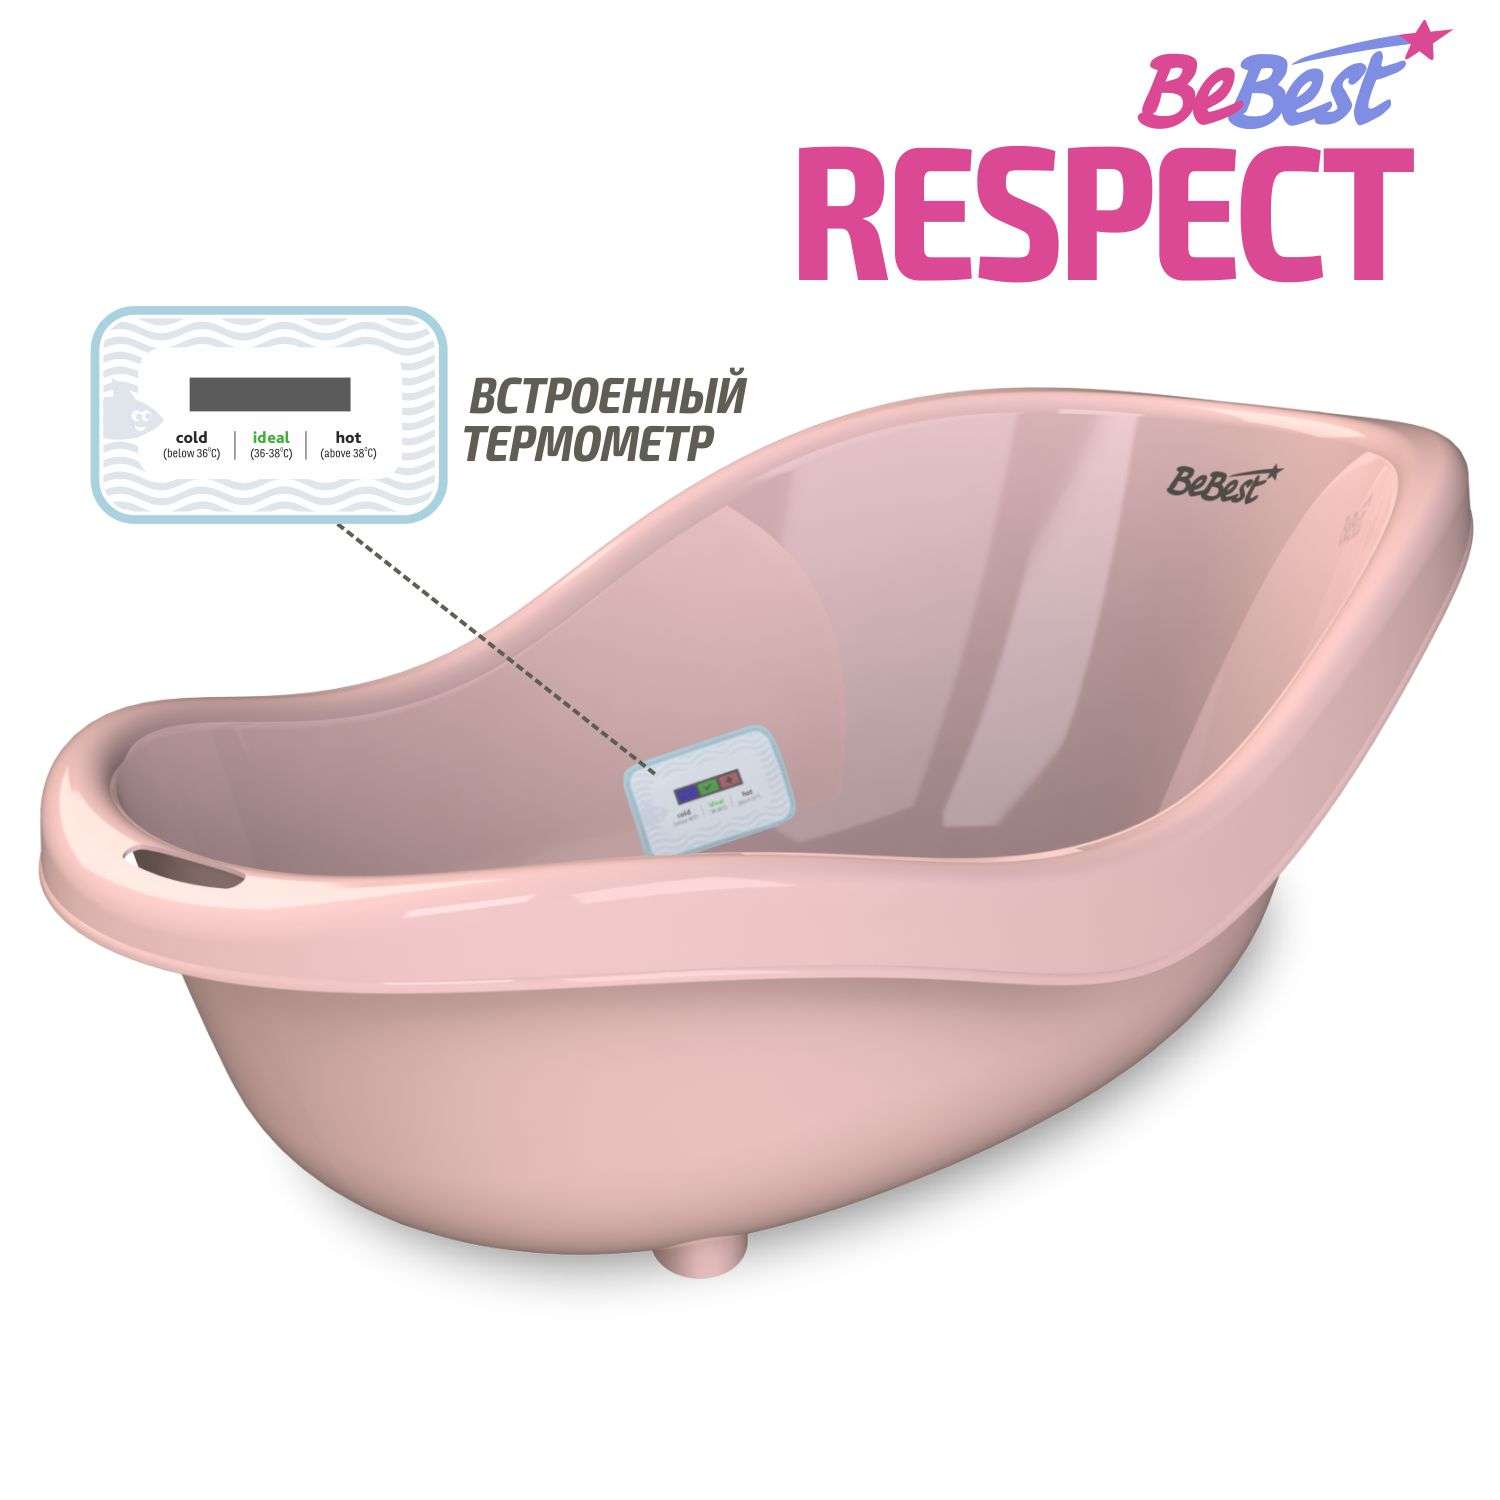 Ванночка для купания BeBest Respect с термометром розовый - фото 1